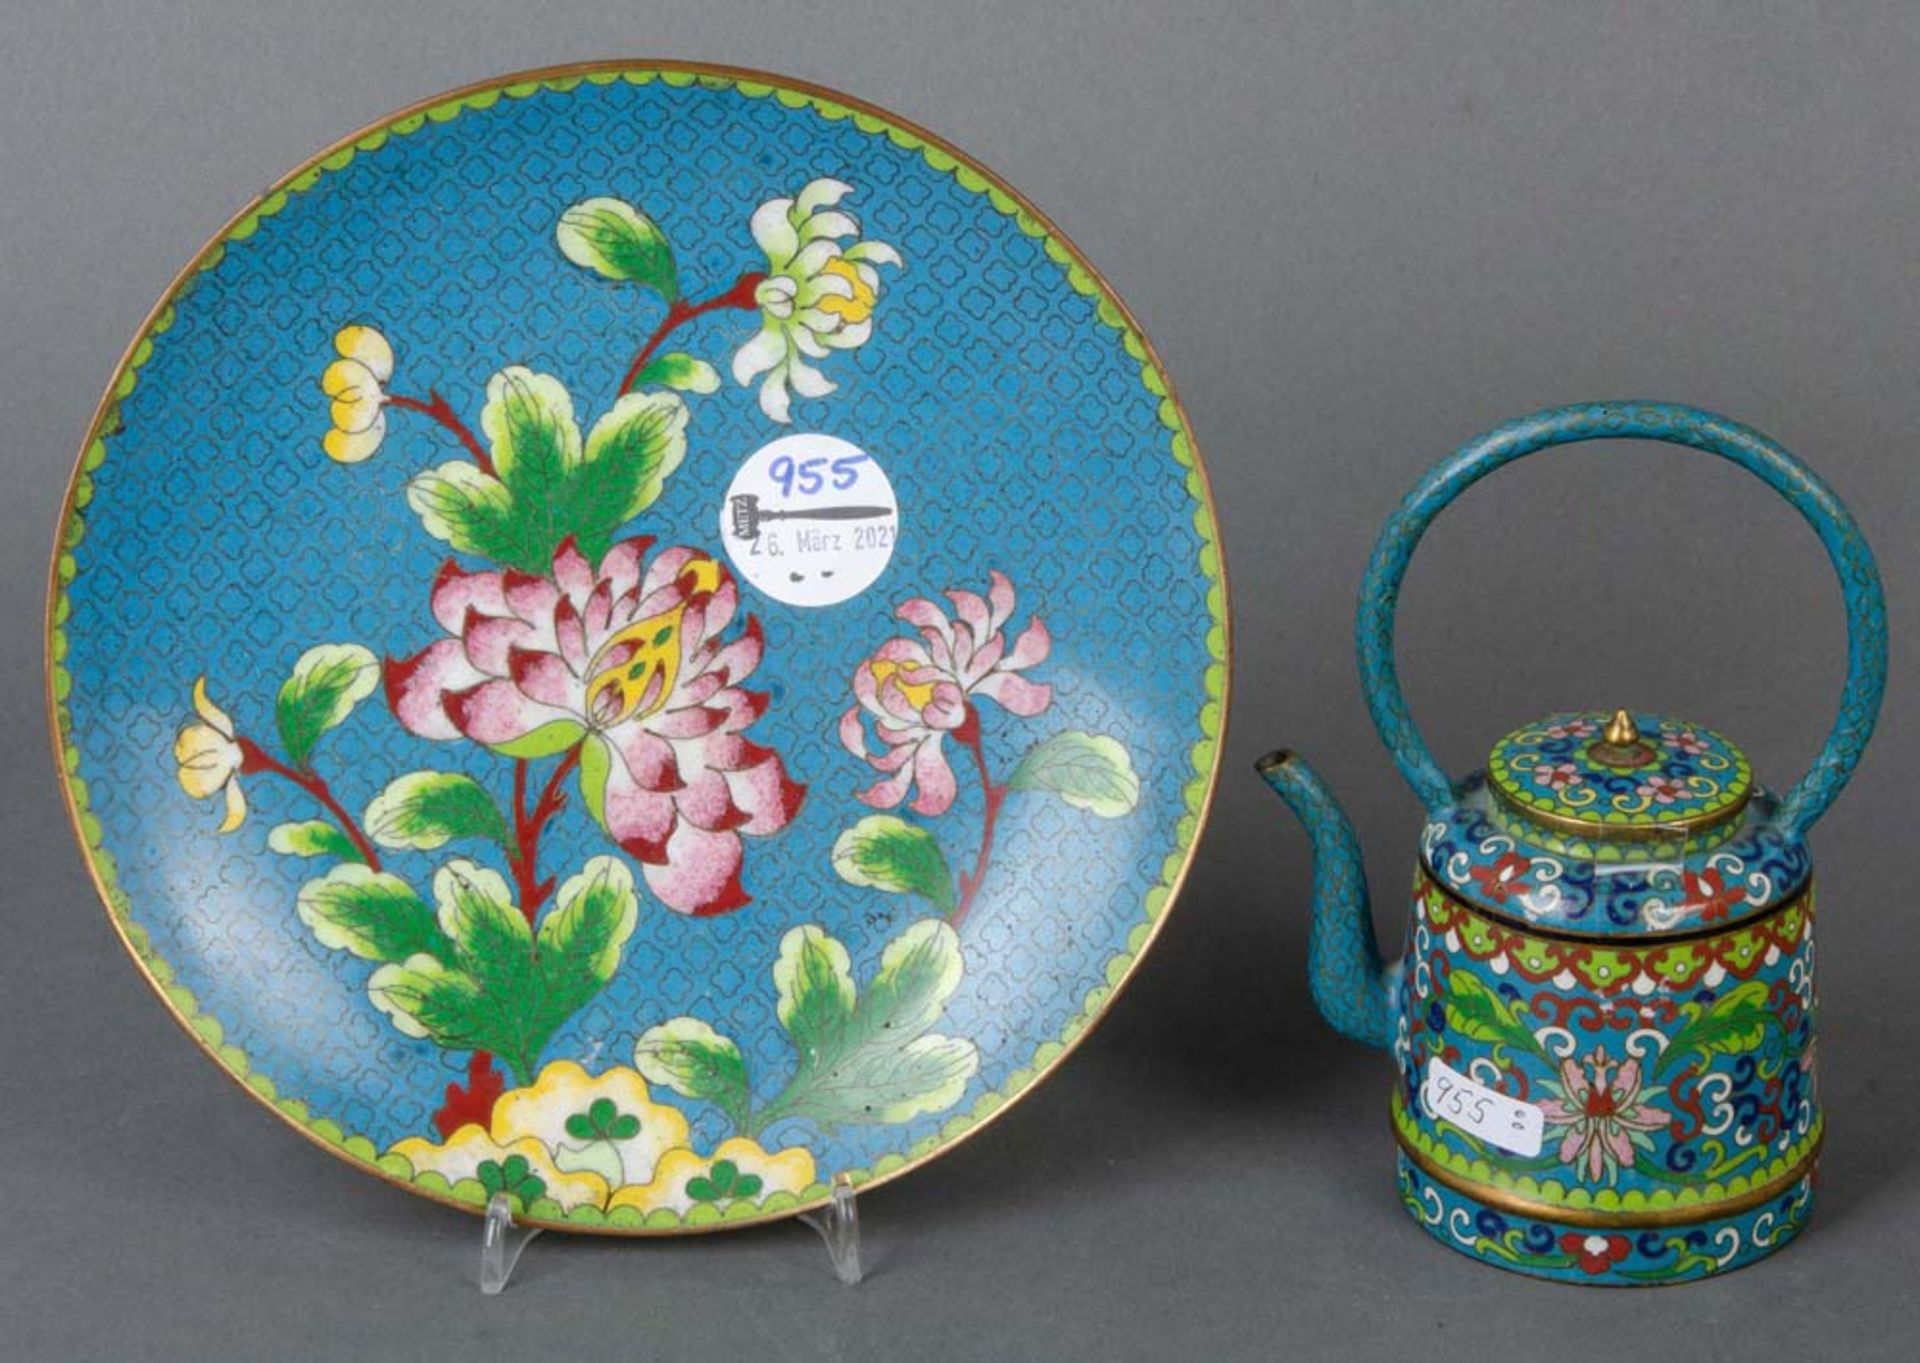 Cloisonné-Kännchen und -Teller. Asien. Beide Teile mit buntem Floraldekor, H=15,5 cm / D=20,5 cm.